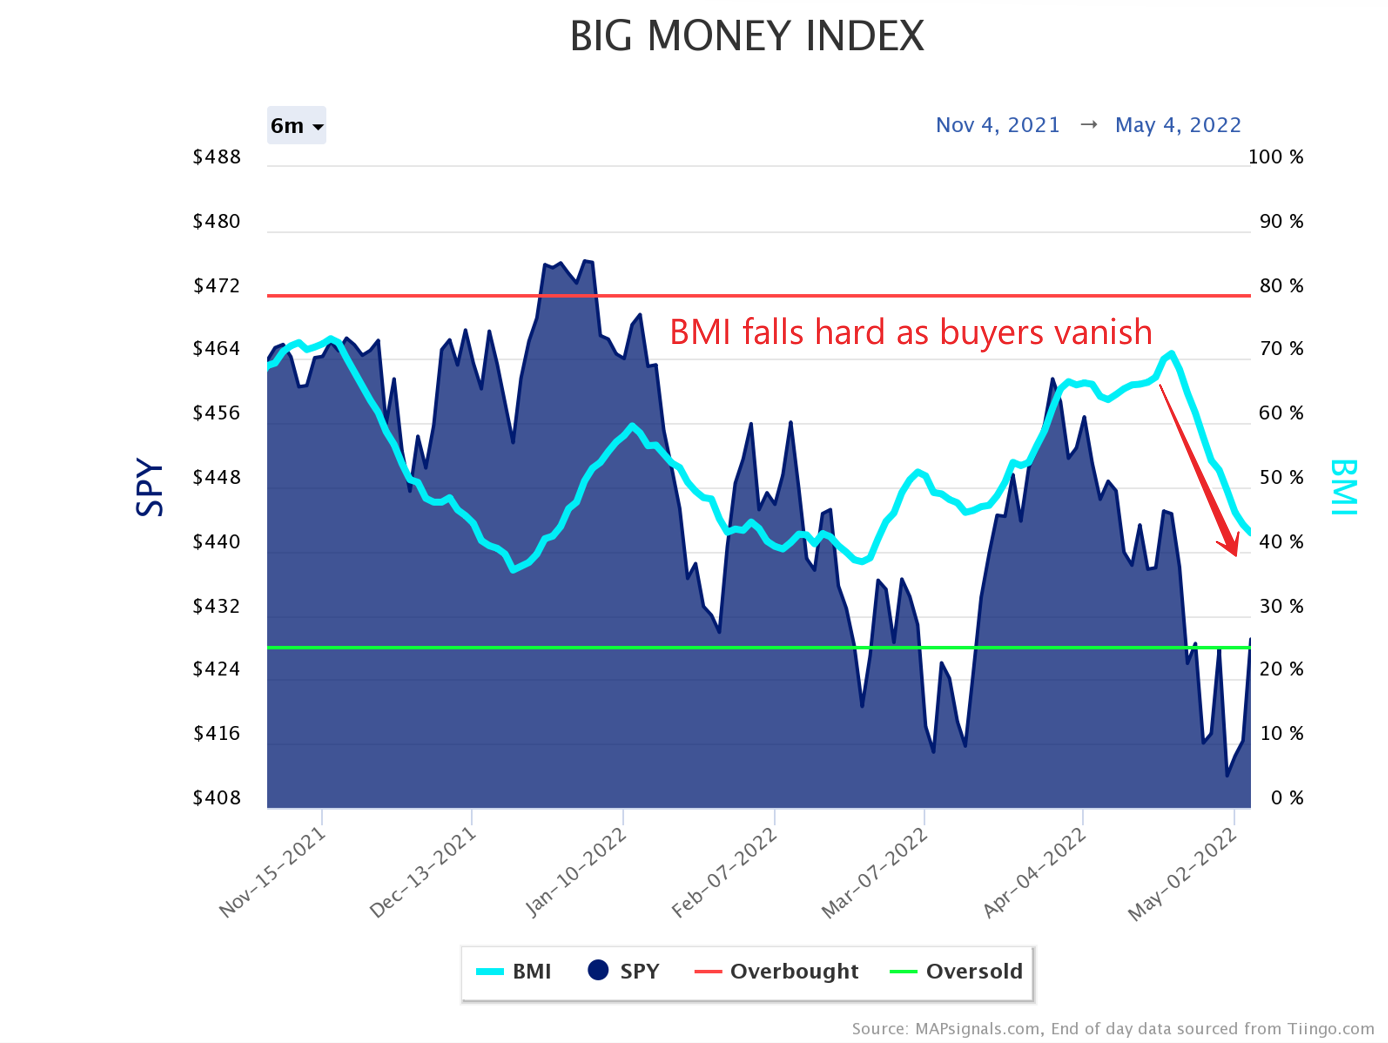 BMI falls hard as buyers vanish | Big Money Index